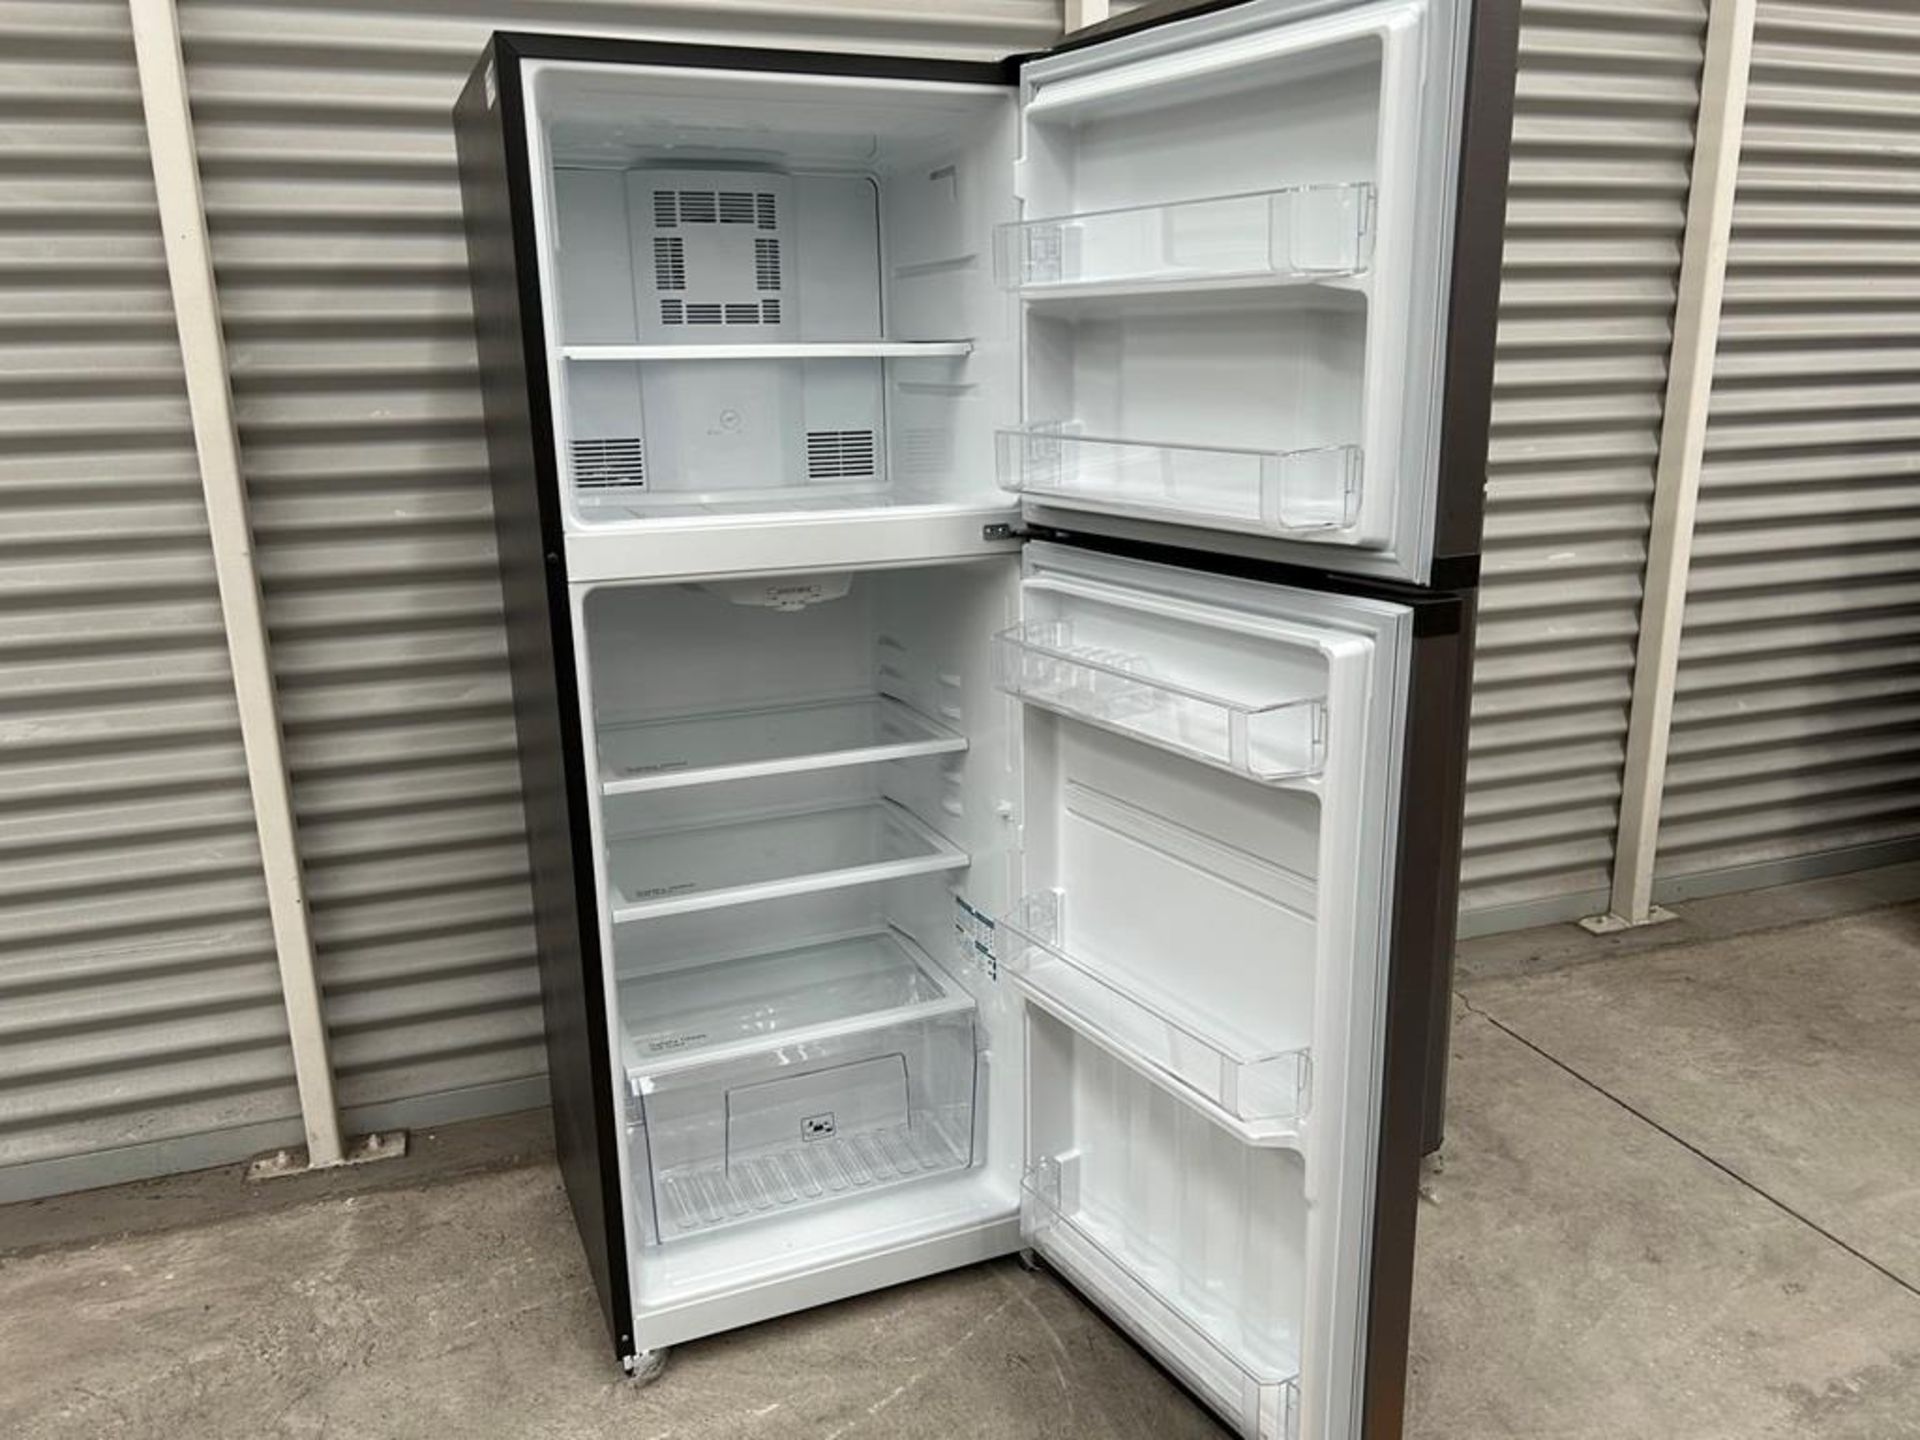 Lote de 2 refrigeradores contiene: 1 Refrigerador Marca MABE, Modelo RME360PVMRM0, Serie 01177, Col - Image 4 of 18